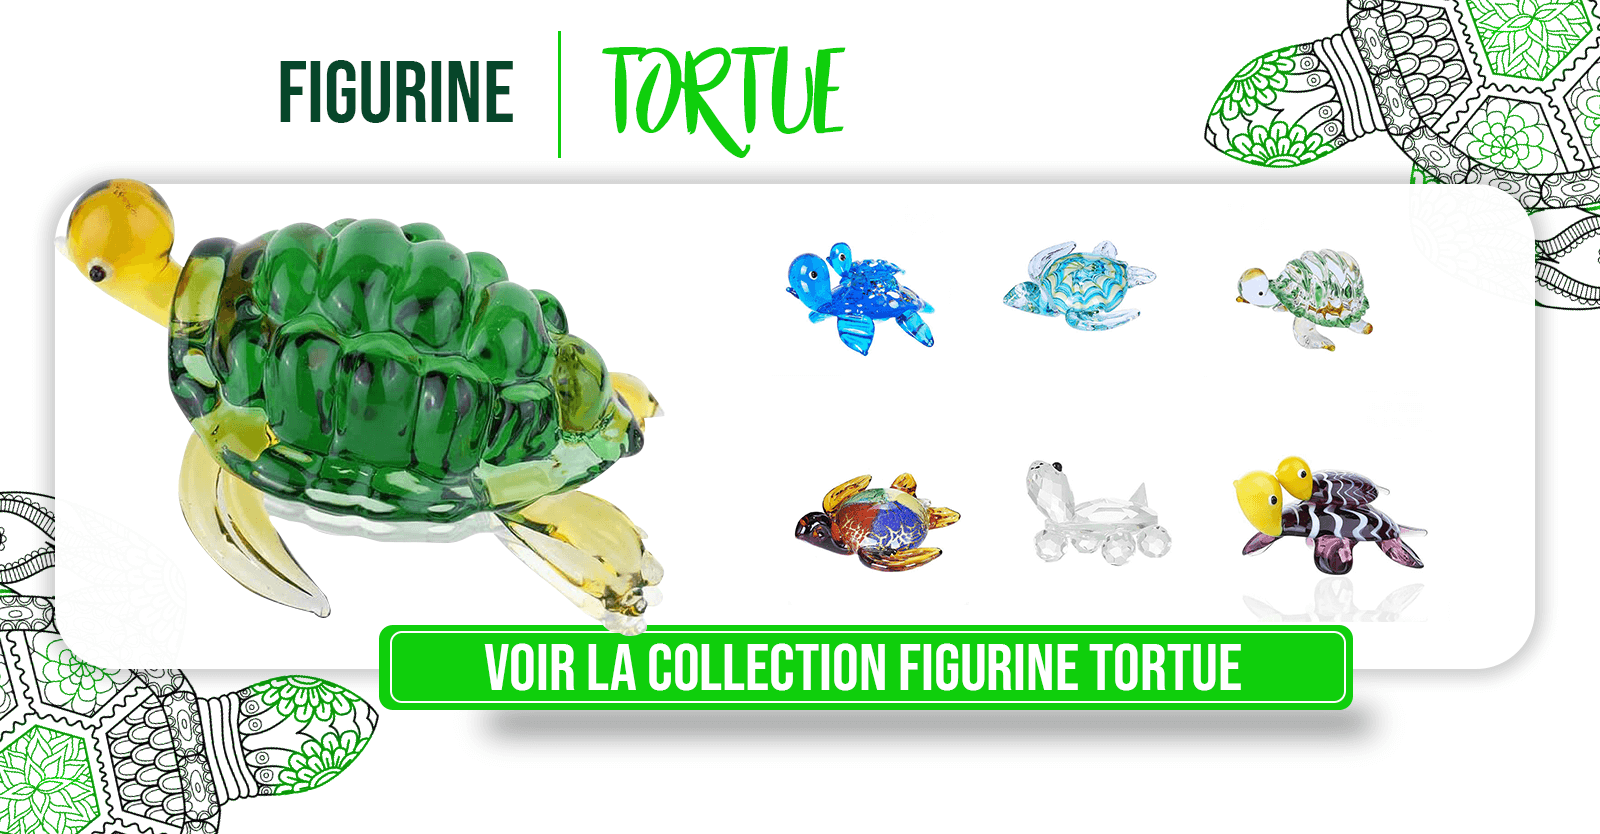 Figurine-tortue